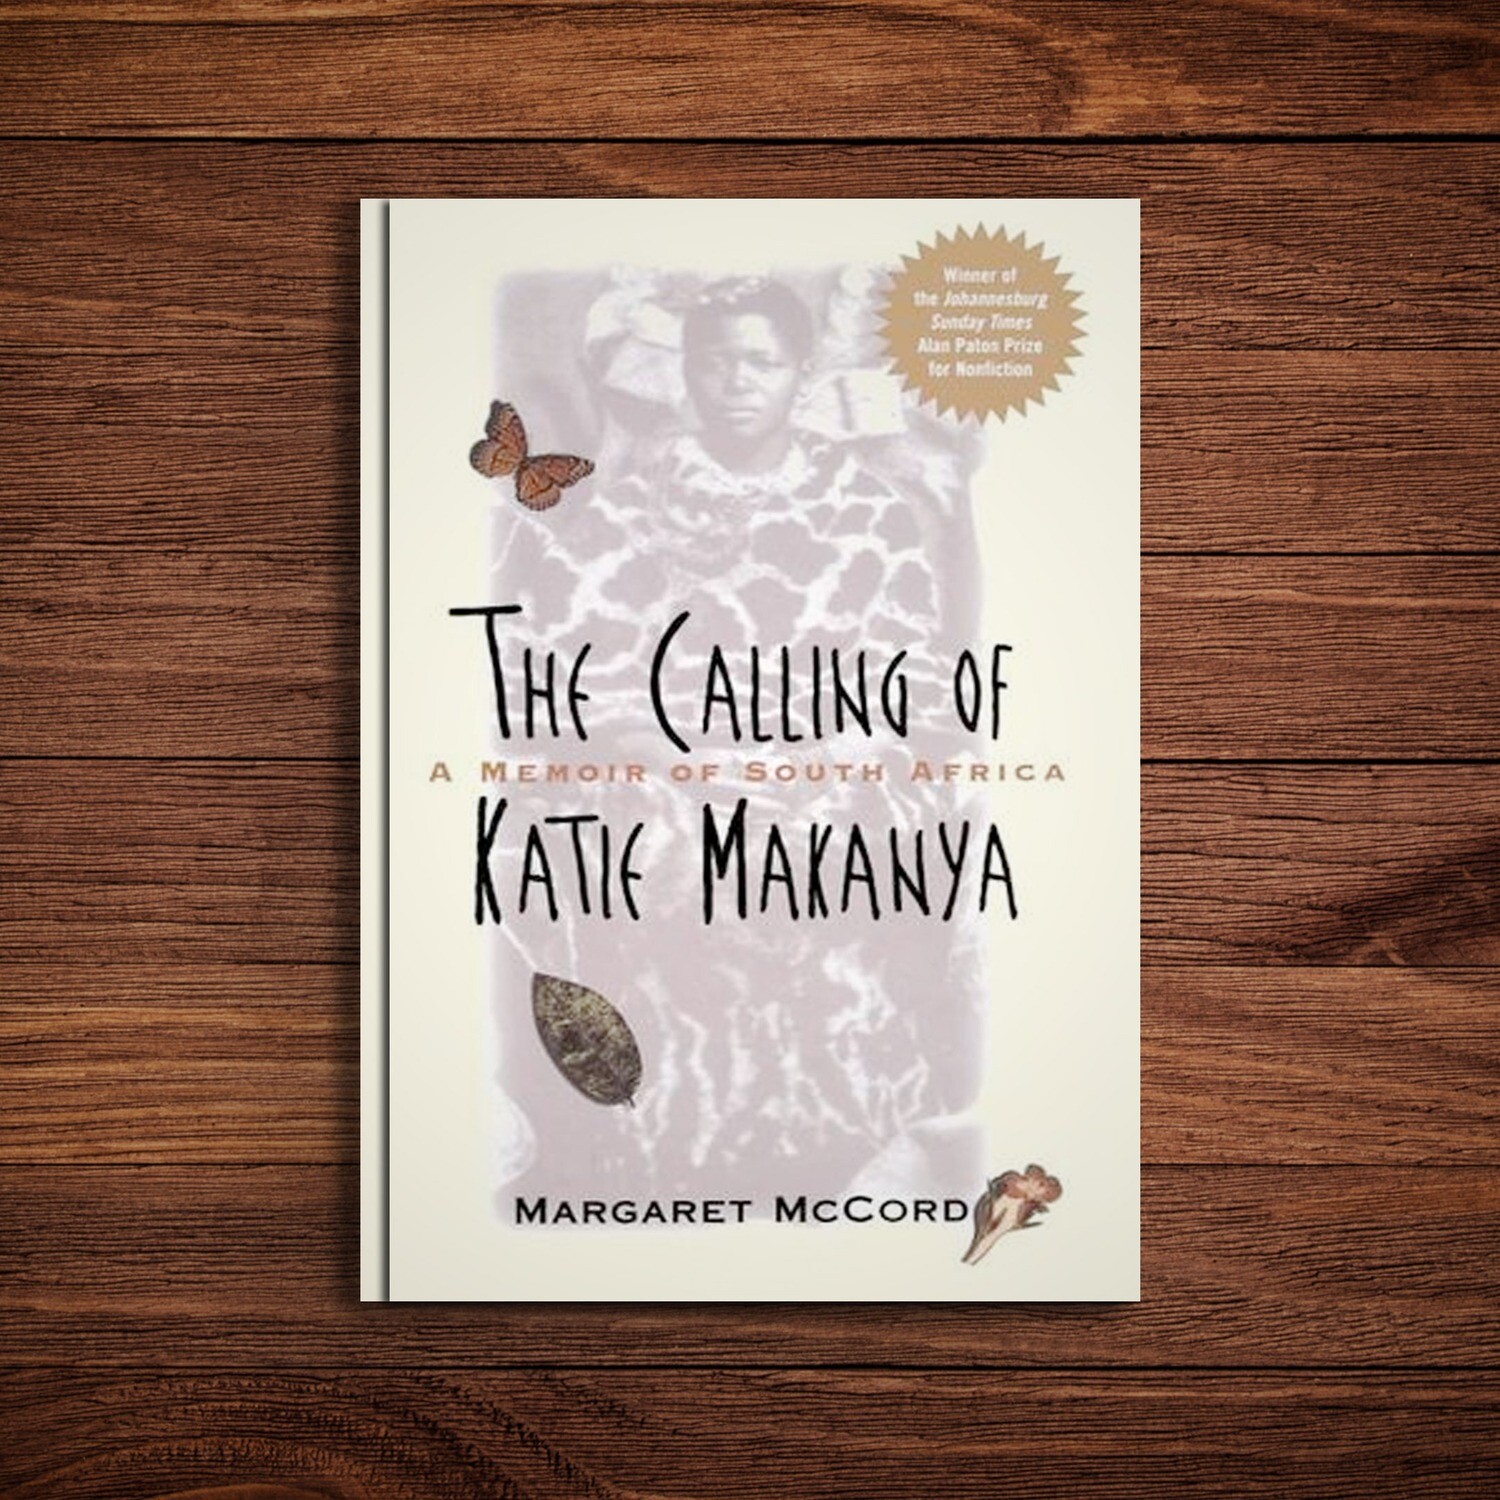 The Calling of Katie Makhanya